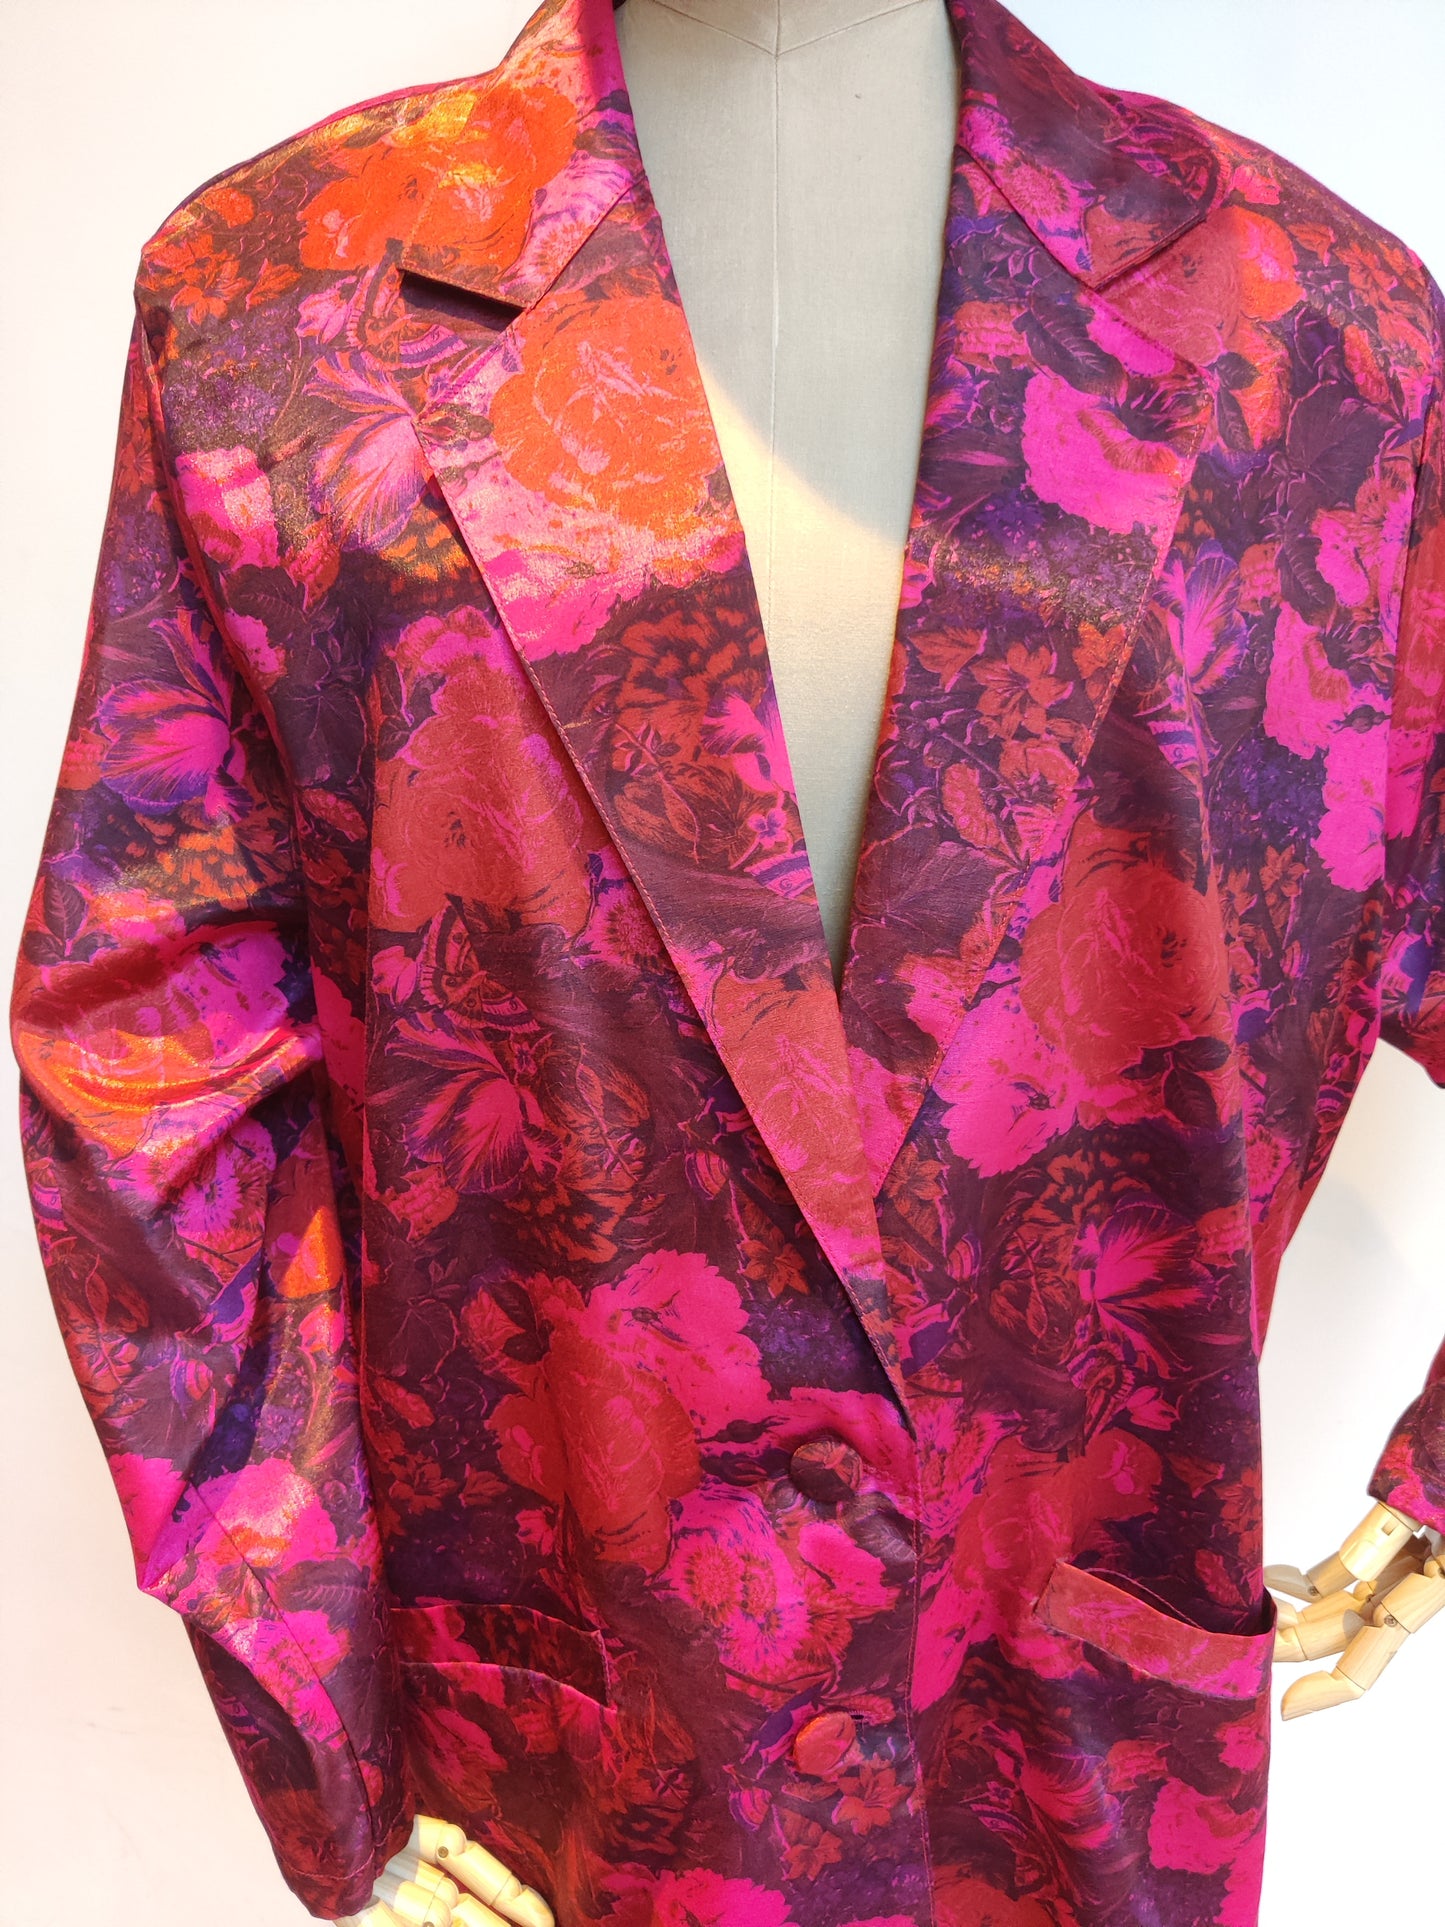 Vibrant pink floral plus size jacket